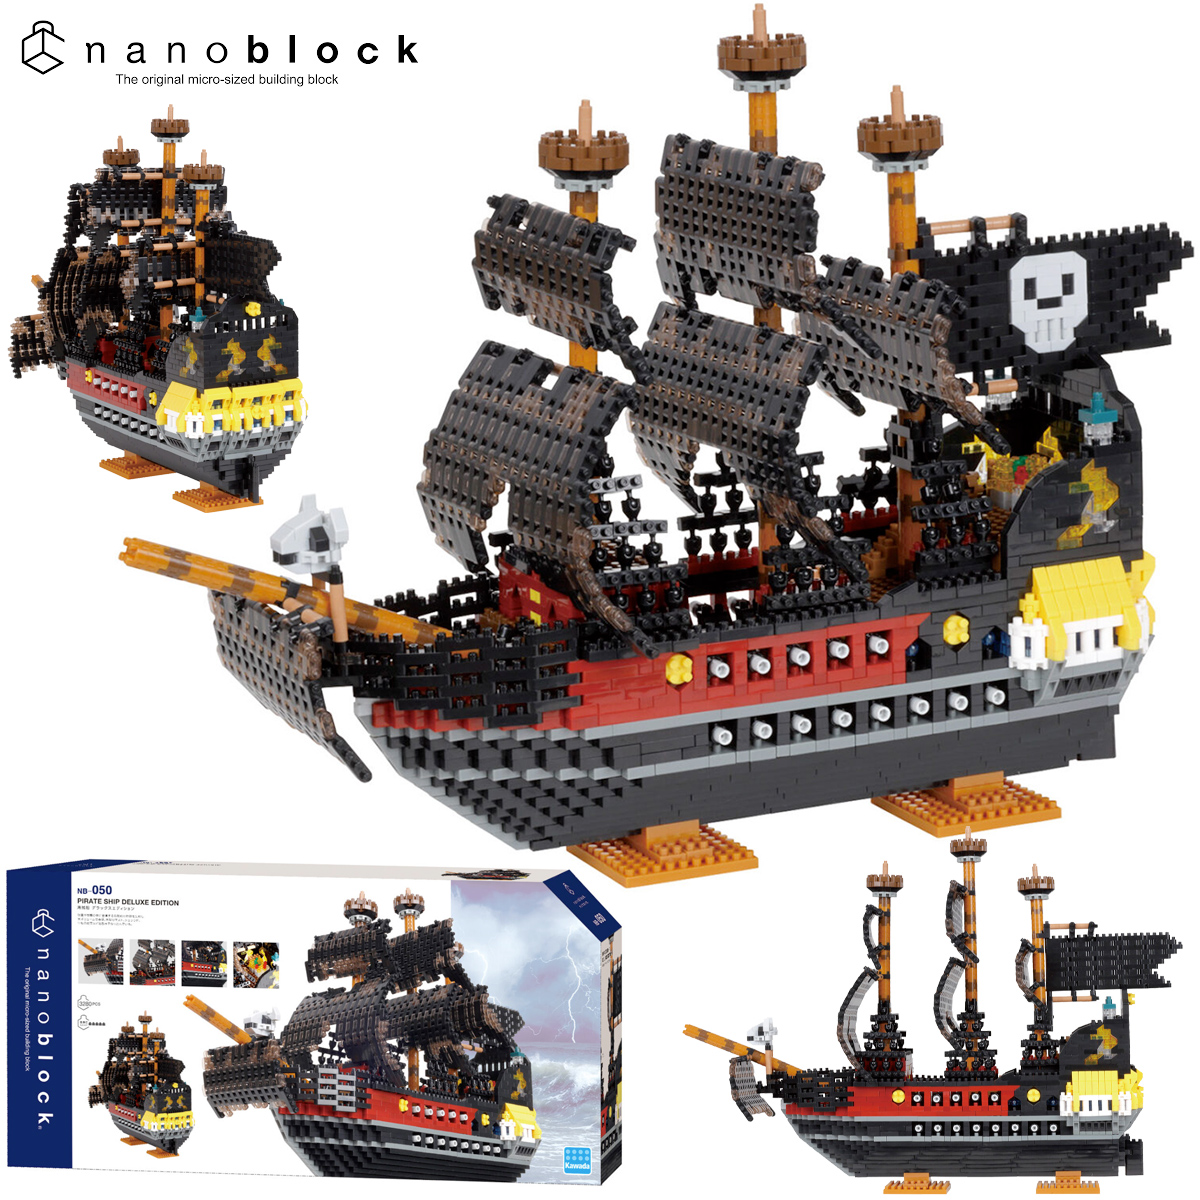 Kit de Montar Nanoblock Navio Pirata com 3.280 peças